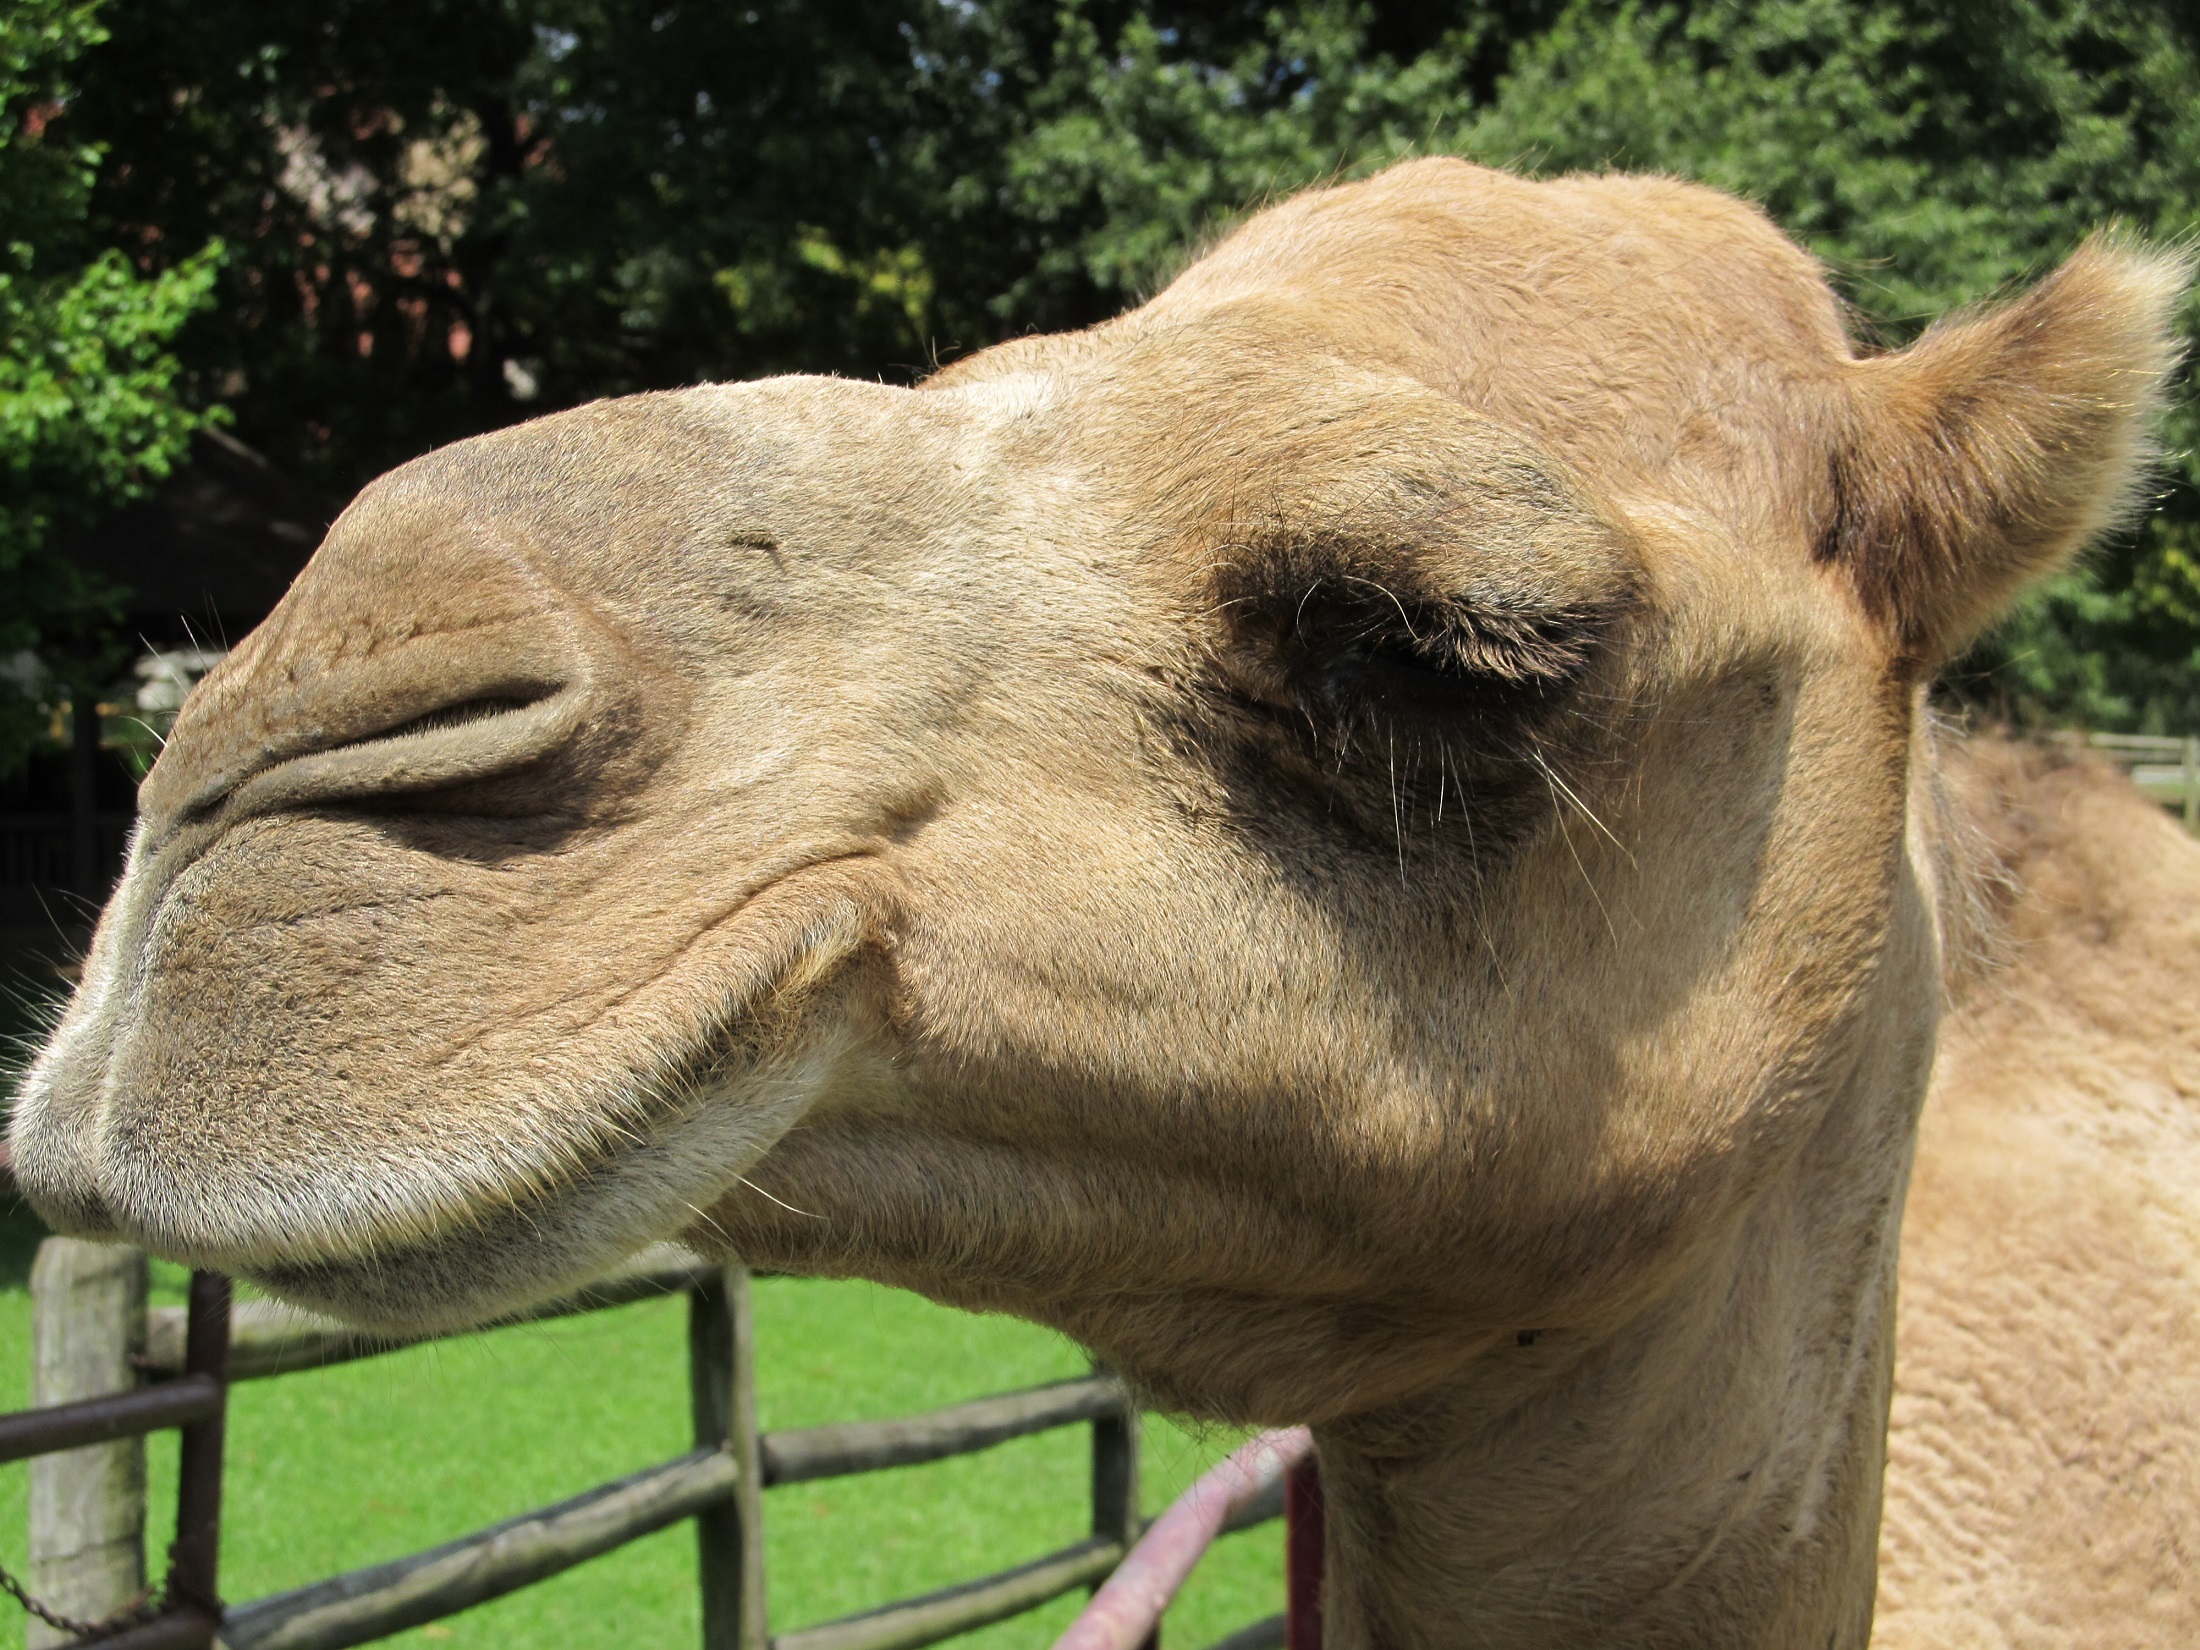 Camel closeup photo